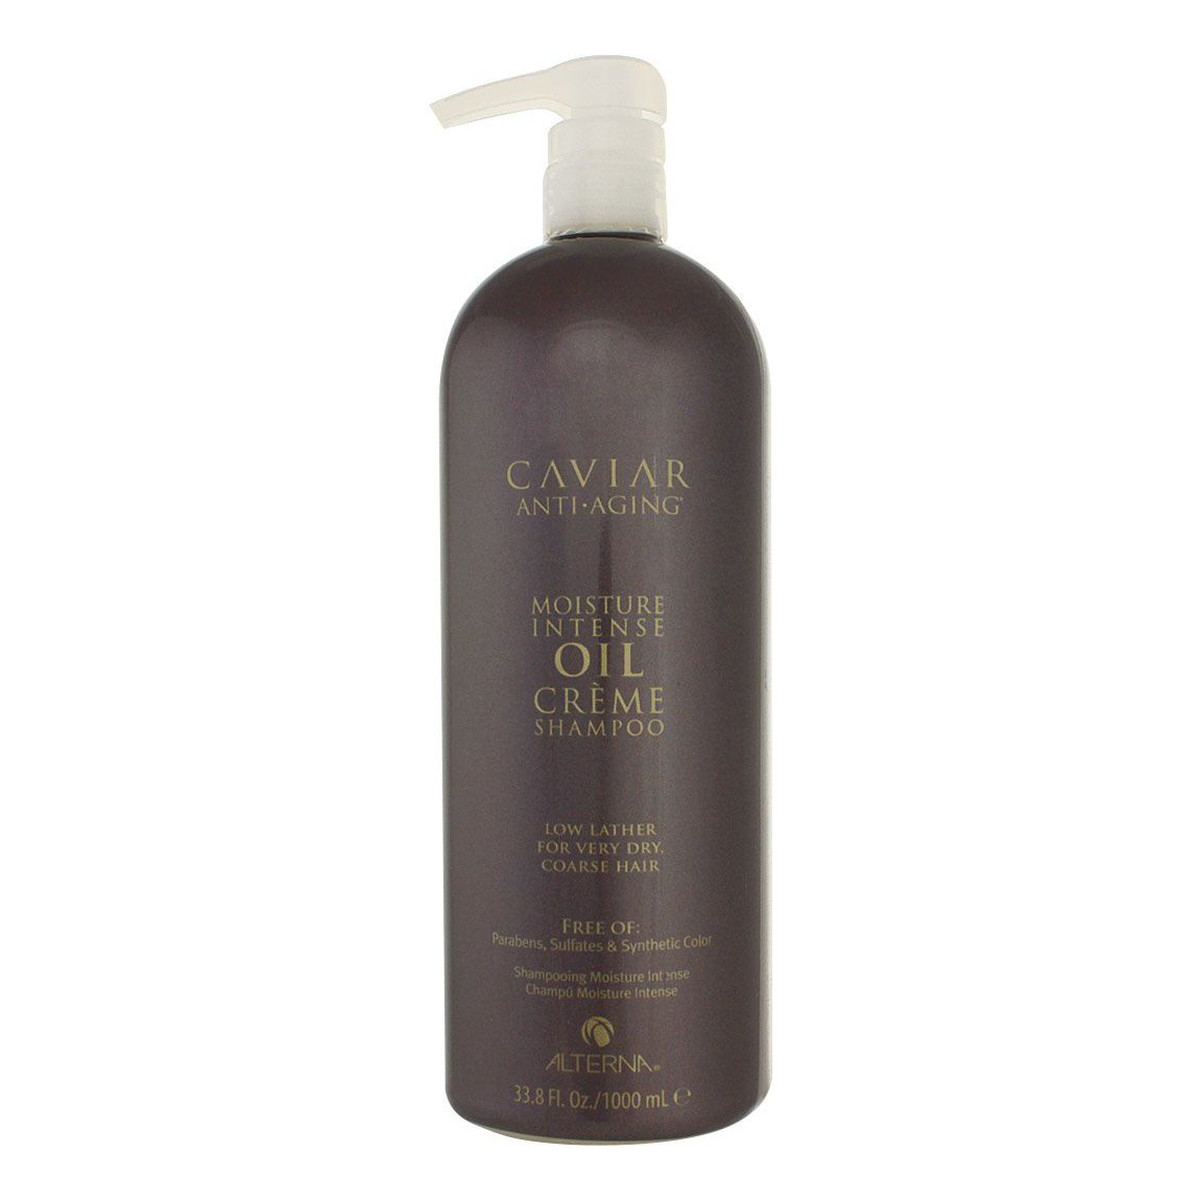 Alterna Caviar Anti-Aging Moisture Intense Oil Creme Shampoo Szampon do włosów intensywnie nawilżający 1000ml